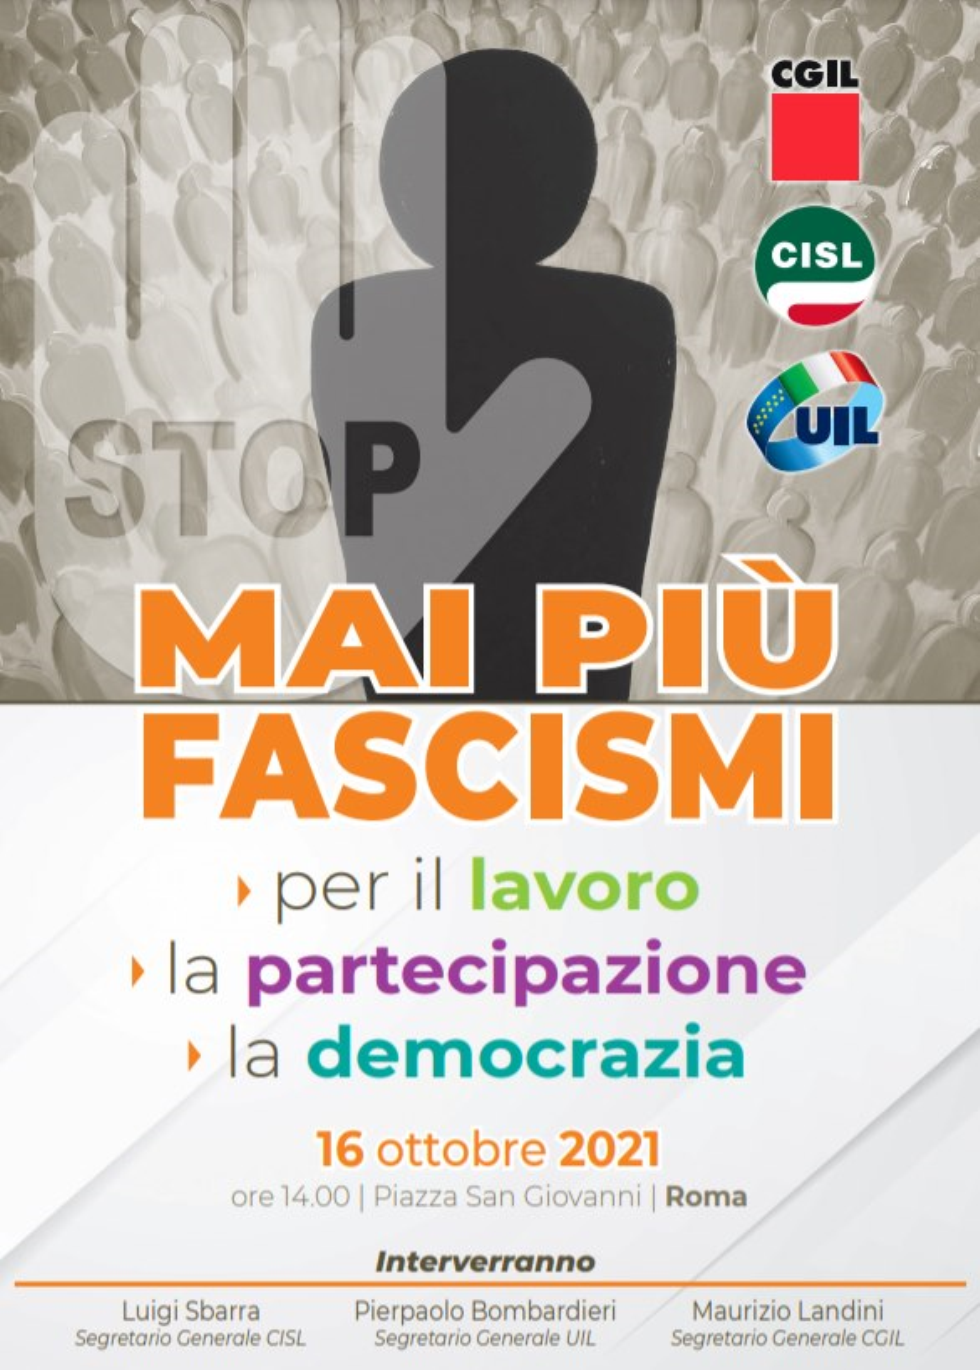 Mai più fascismi. Cgil Cisl e UIl in piazza San Giovanni a Roma, sabato 16 ottore 